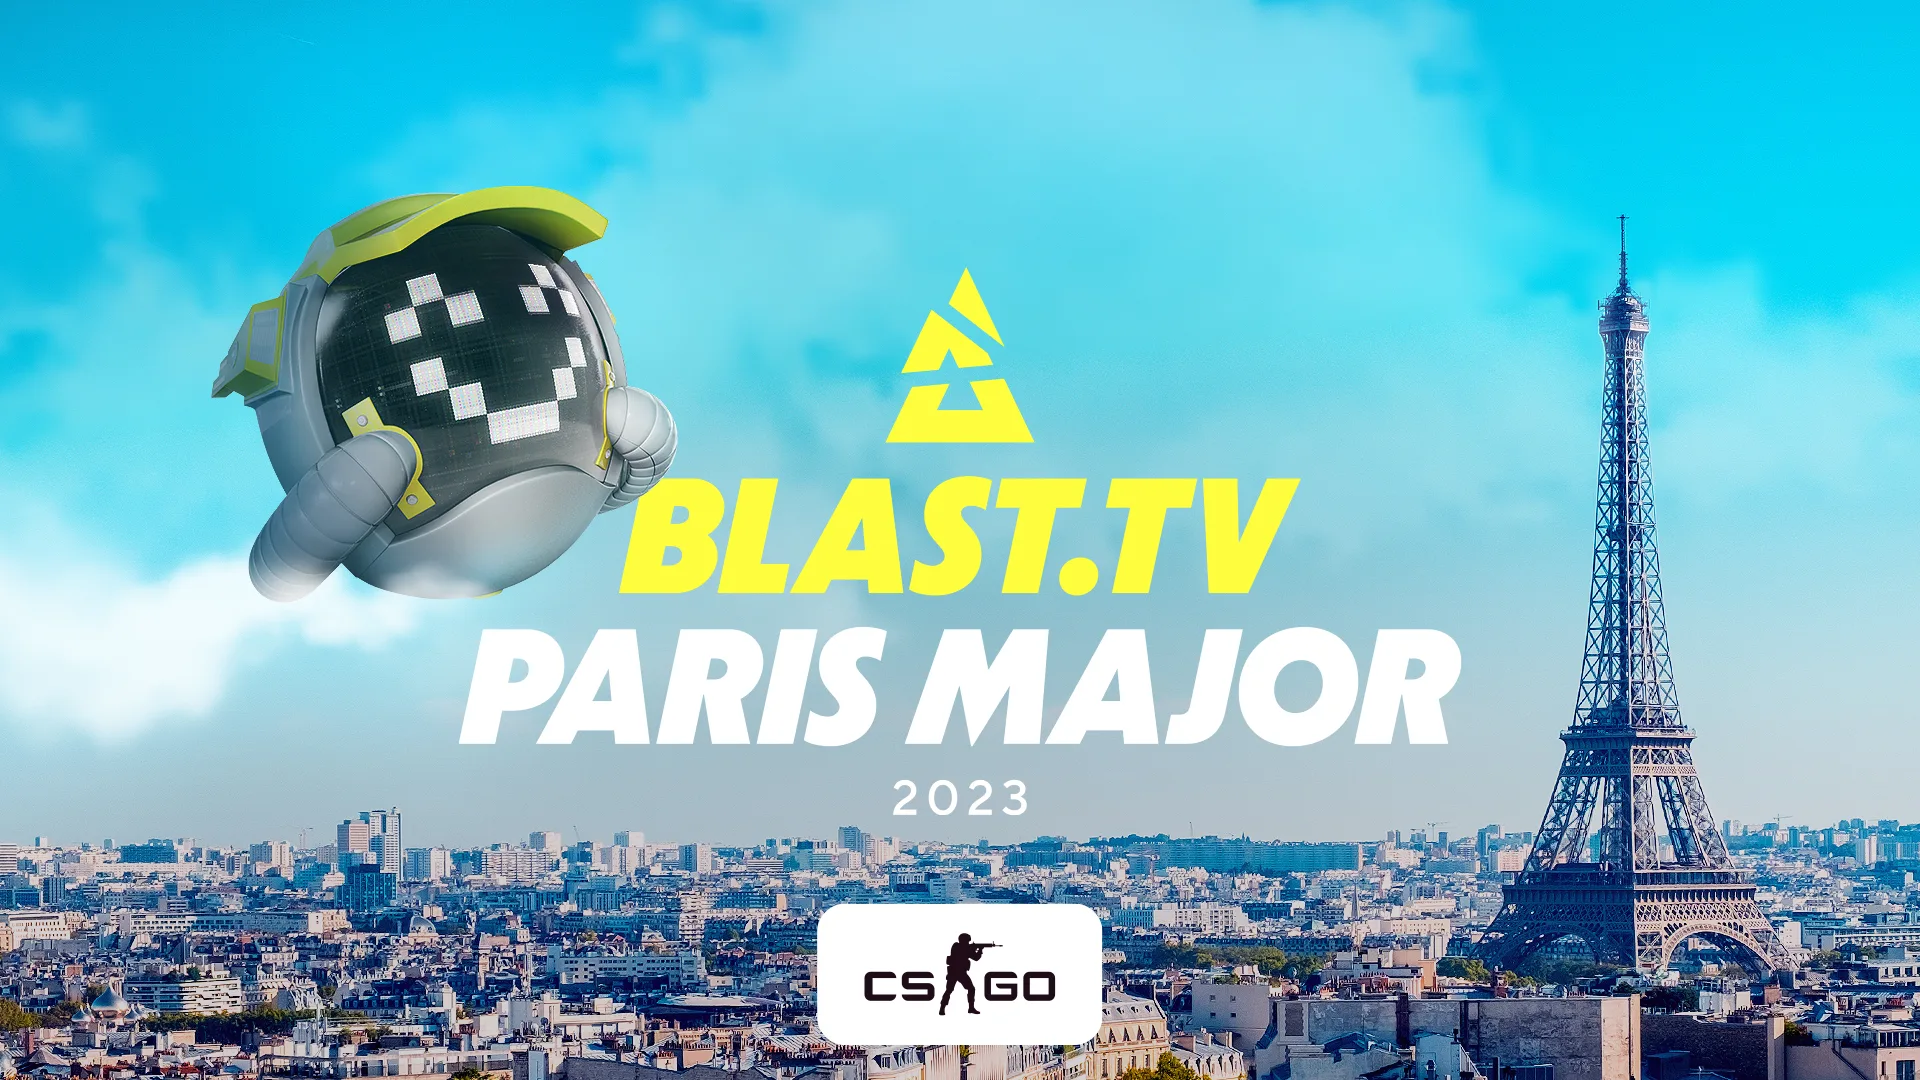 Участники BLAST.tv Paris Major 2023 заработали со стикеров 110 миллионов долларов